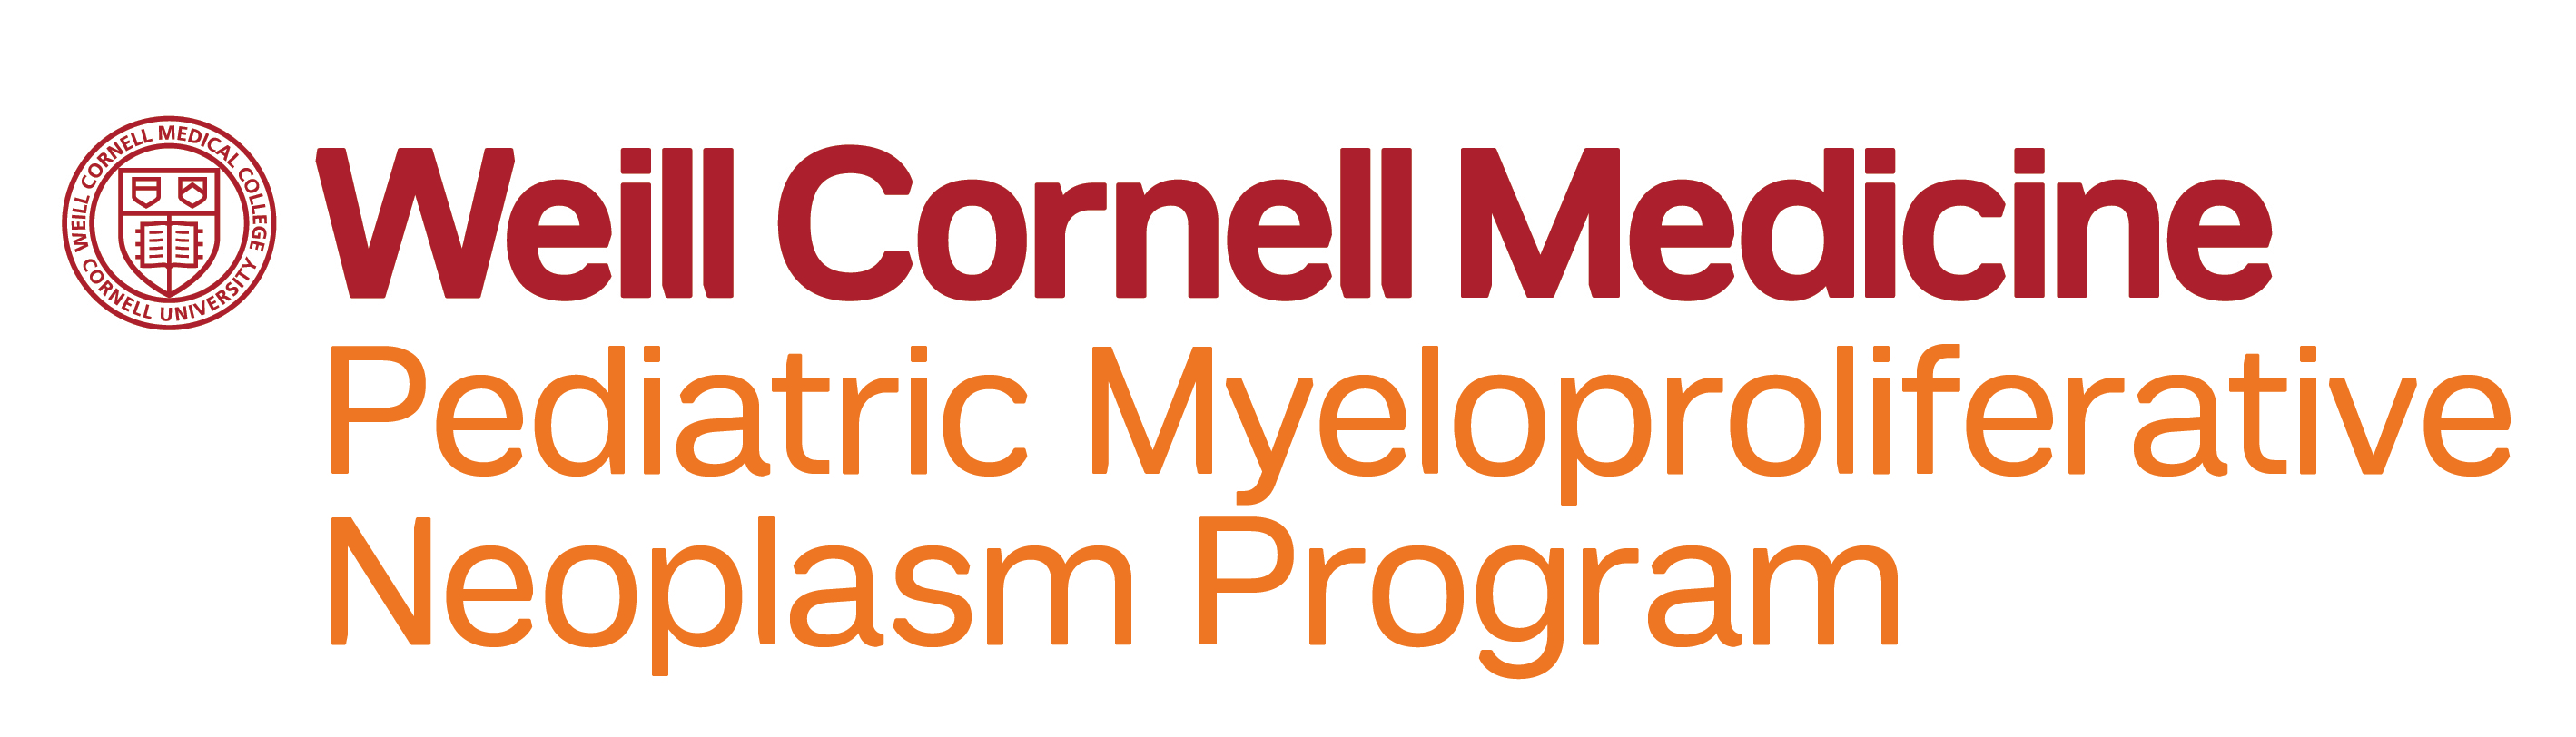 Pediatric Myeloproliferative Neoplasm Program